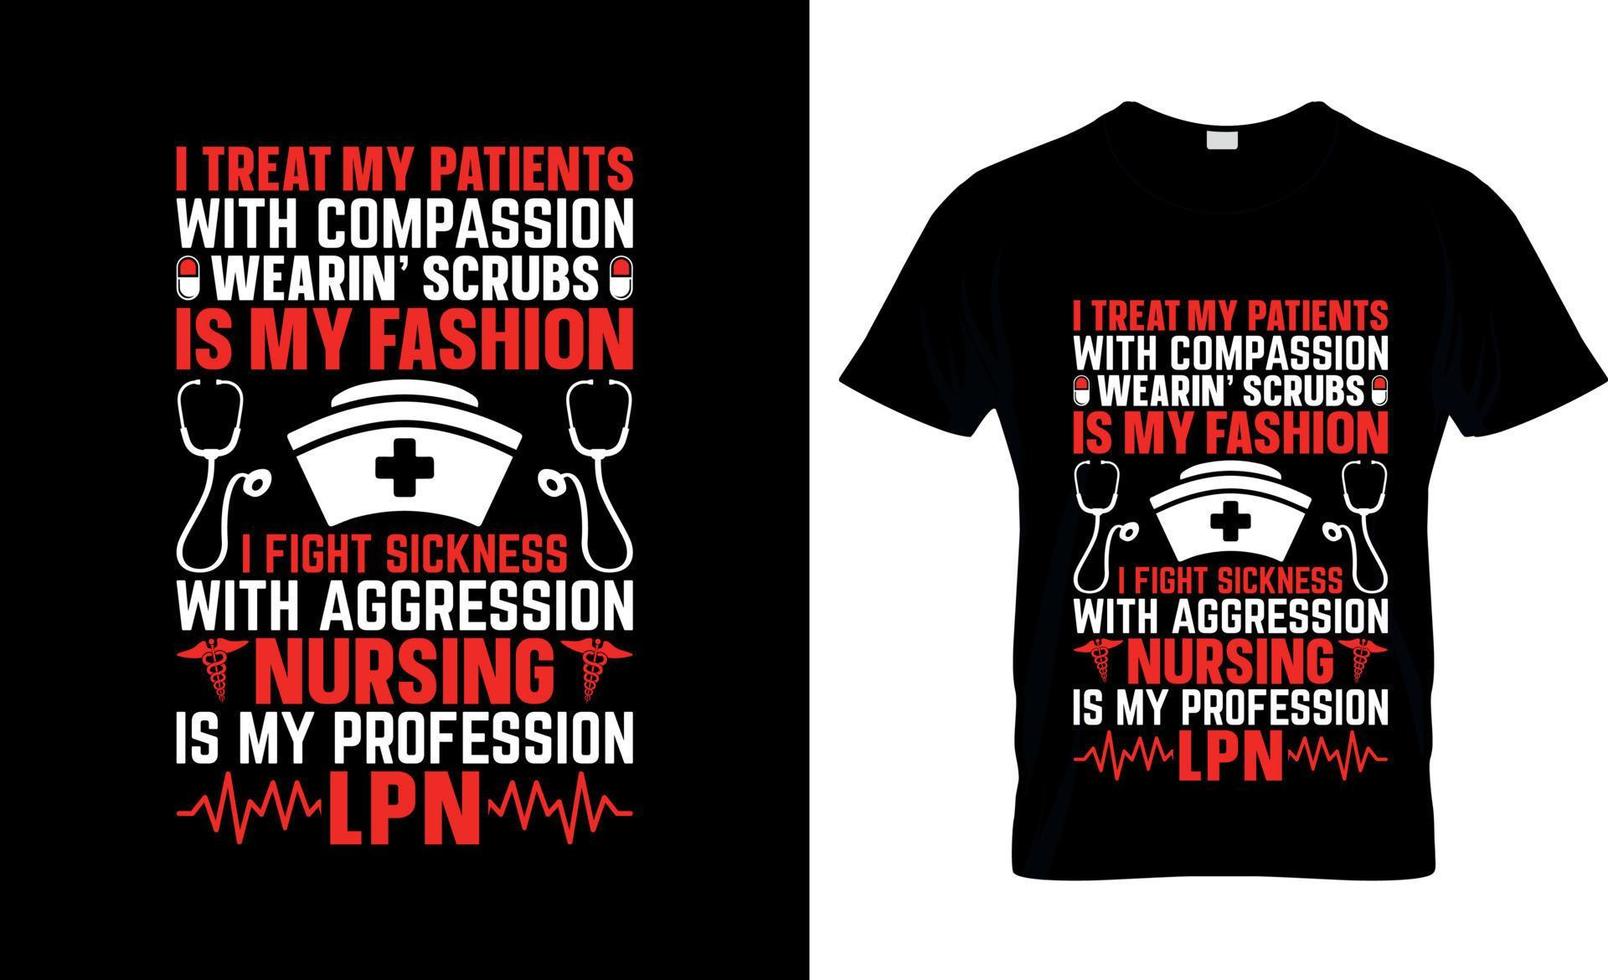 licensierad praktisk sjuksköterska t-shirt design, lpn t-shirt slogan och kläder design, lpn typografi, lpn vektor, lpn illustration vektor